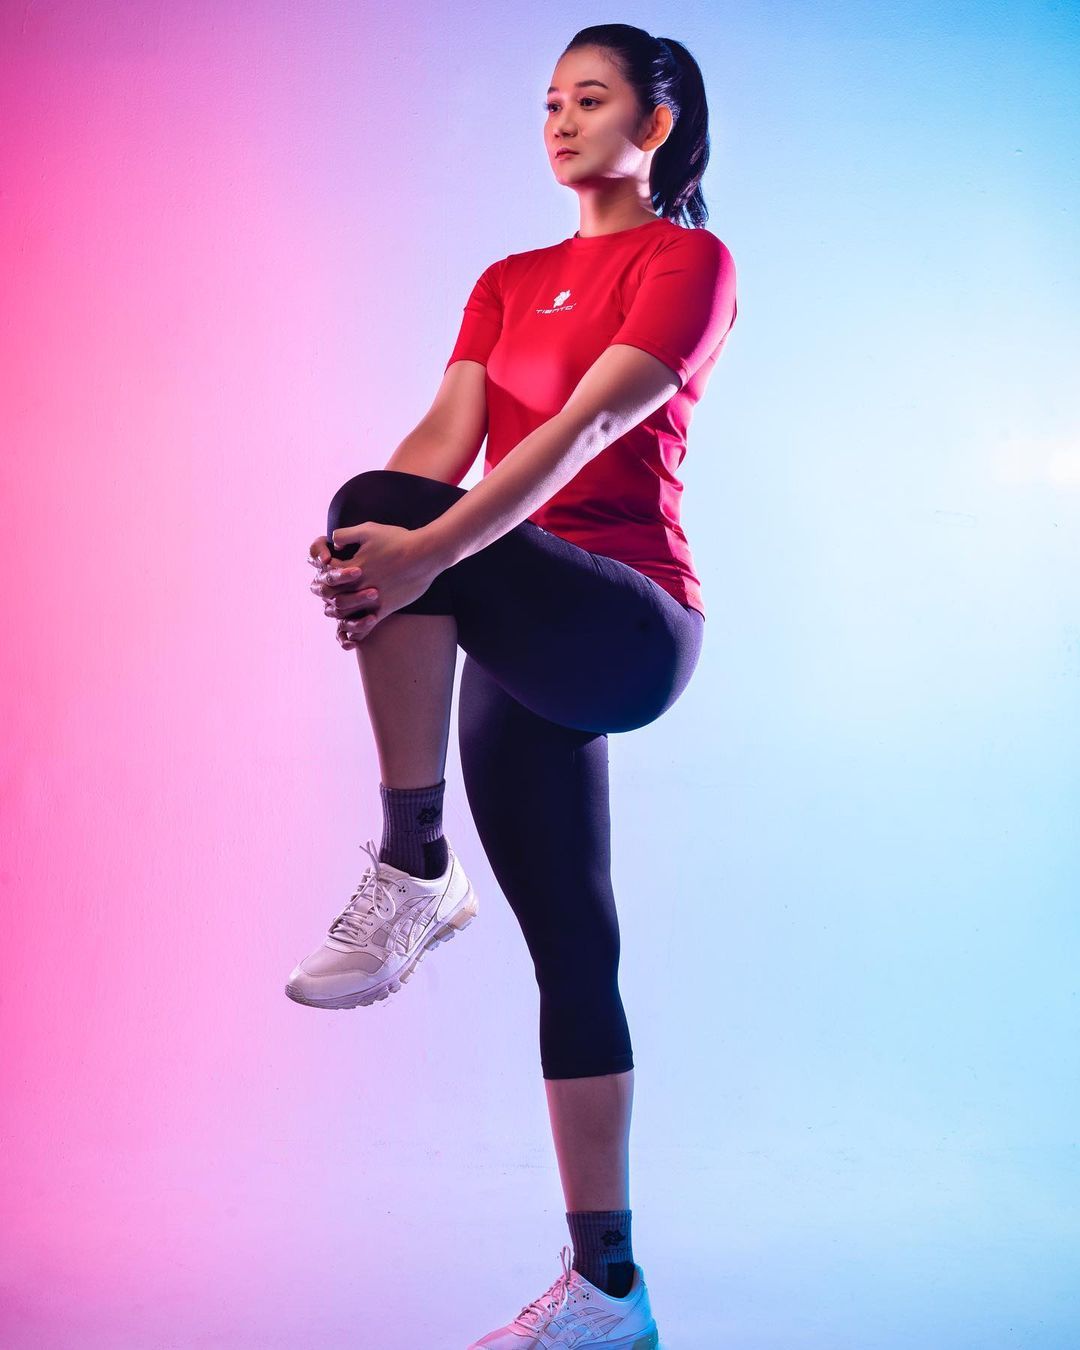 Maya Kurnia Indri Sari bukan hanya dikenal sebagai atlet voli, ia juga berprofesi sebagai karyawan bank.